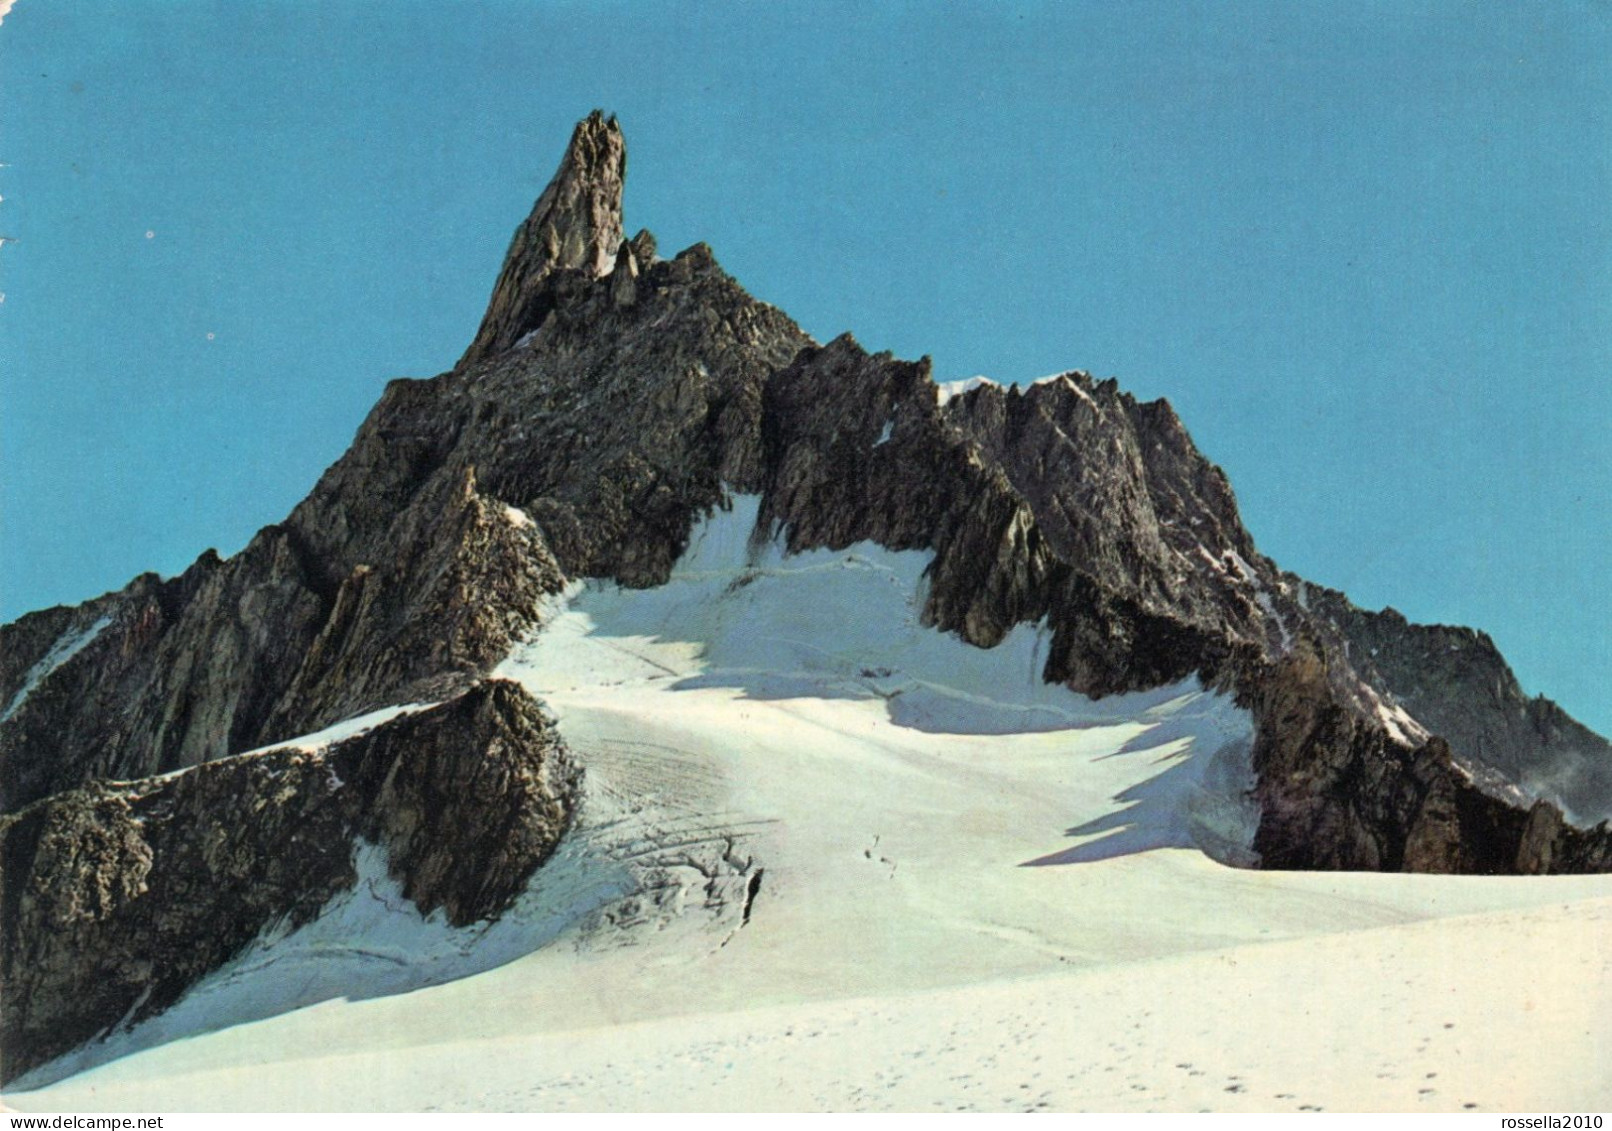 CARTOLINA 1972 ITALIA VALLE D' AOSTA COURMAYEUR DENTE DEL GIGANTE Italy Postcard ITALIEN AK - Aosta